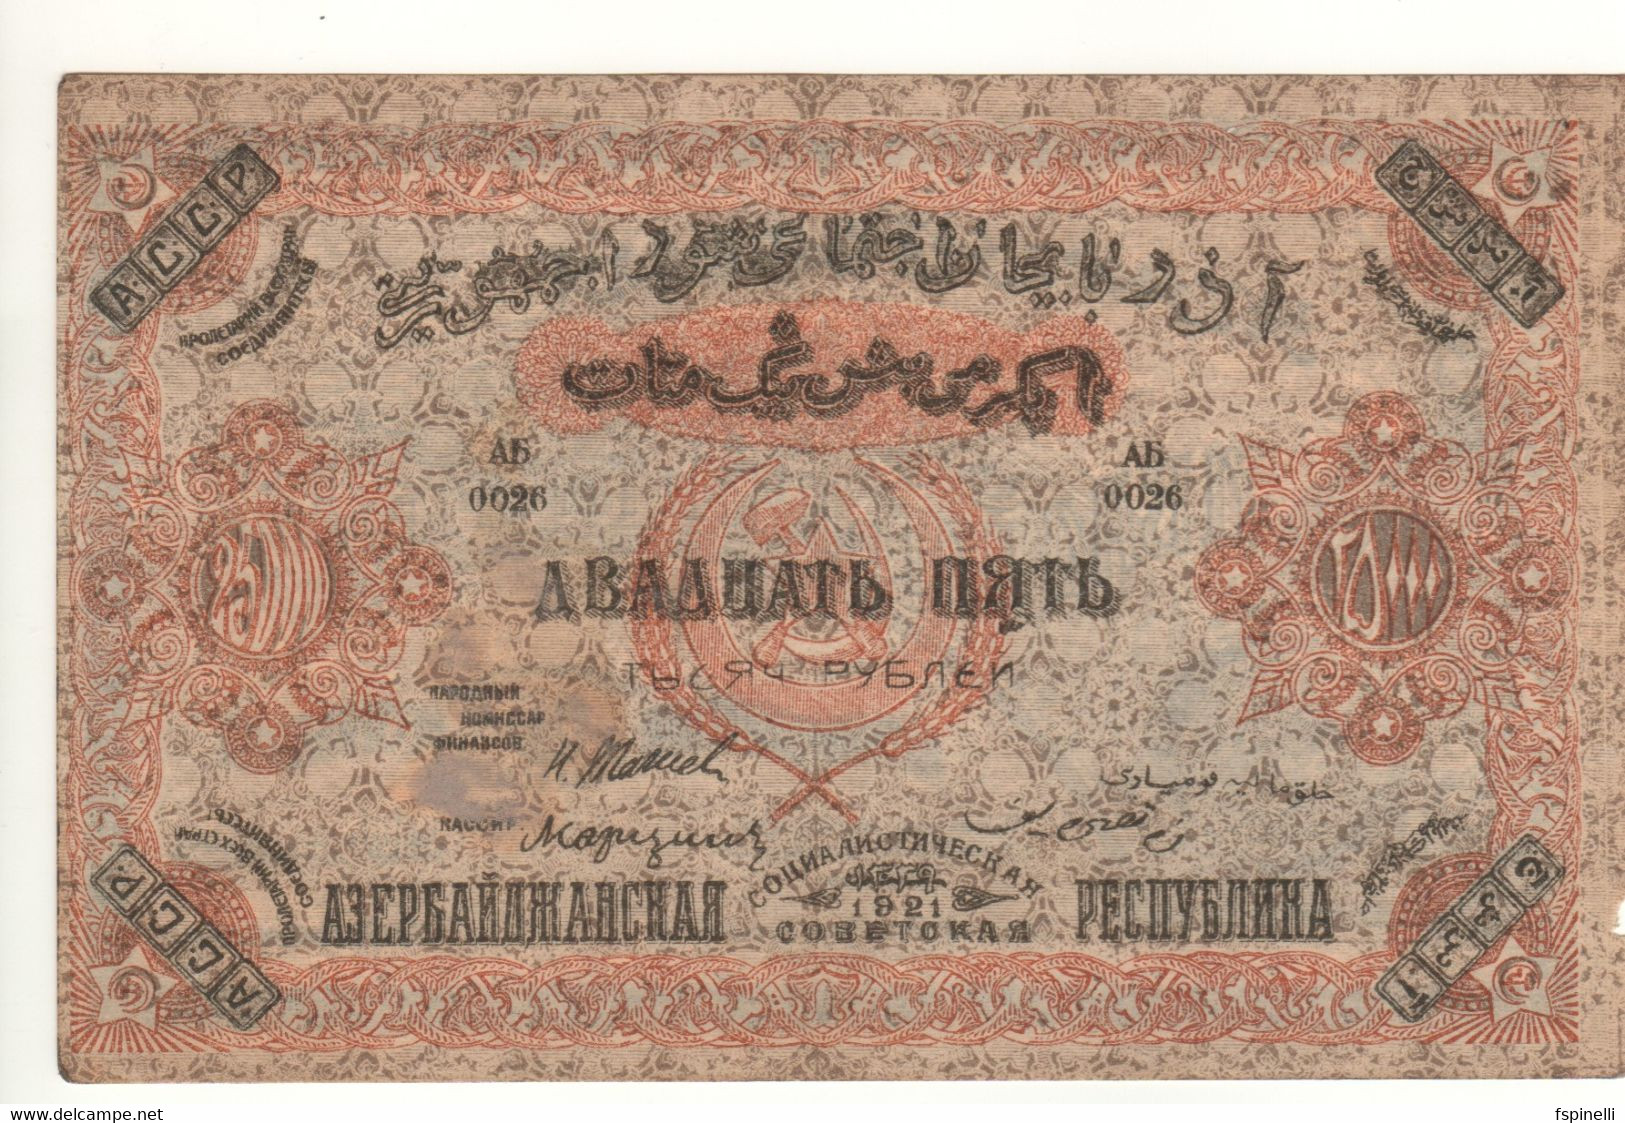 AZERBAIJAN  25'000 Rubley/Manat  PS715a  1921   RUSSIA  (Socialist Soviet Republic) - Azerbeidzjan